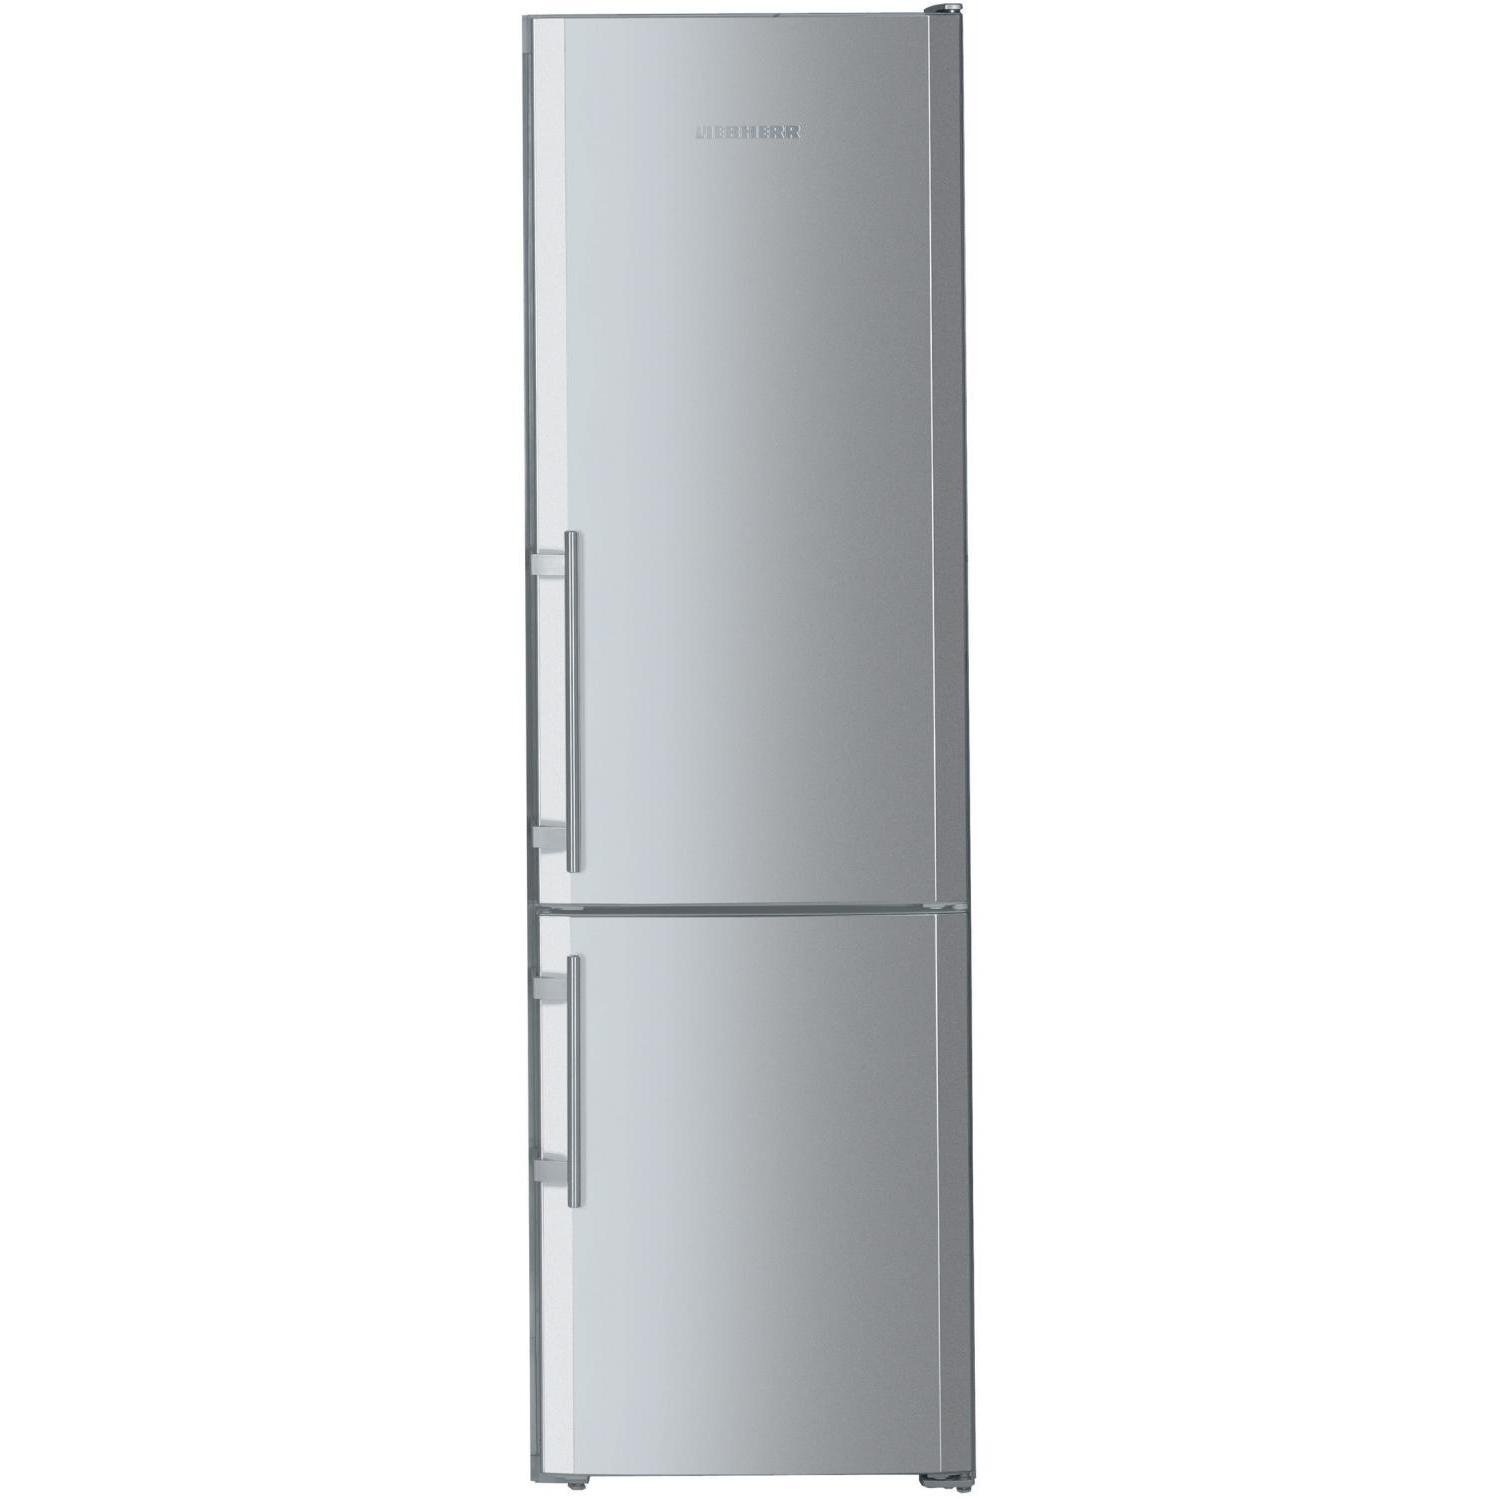 Холодильник высота 200. Холодильник Liebherr 55 см. Холодильник Liebherr двухкамерный высота 180 серебристый. Холодильник шириной 55 см двухкамерный Либхер бежевый. Холодильник Liebherr 55 см ширина.